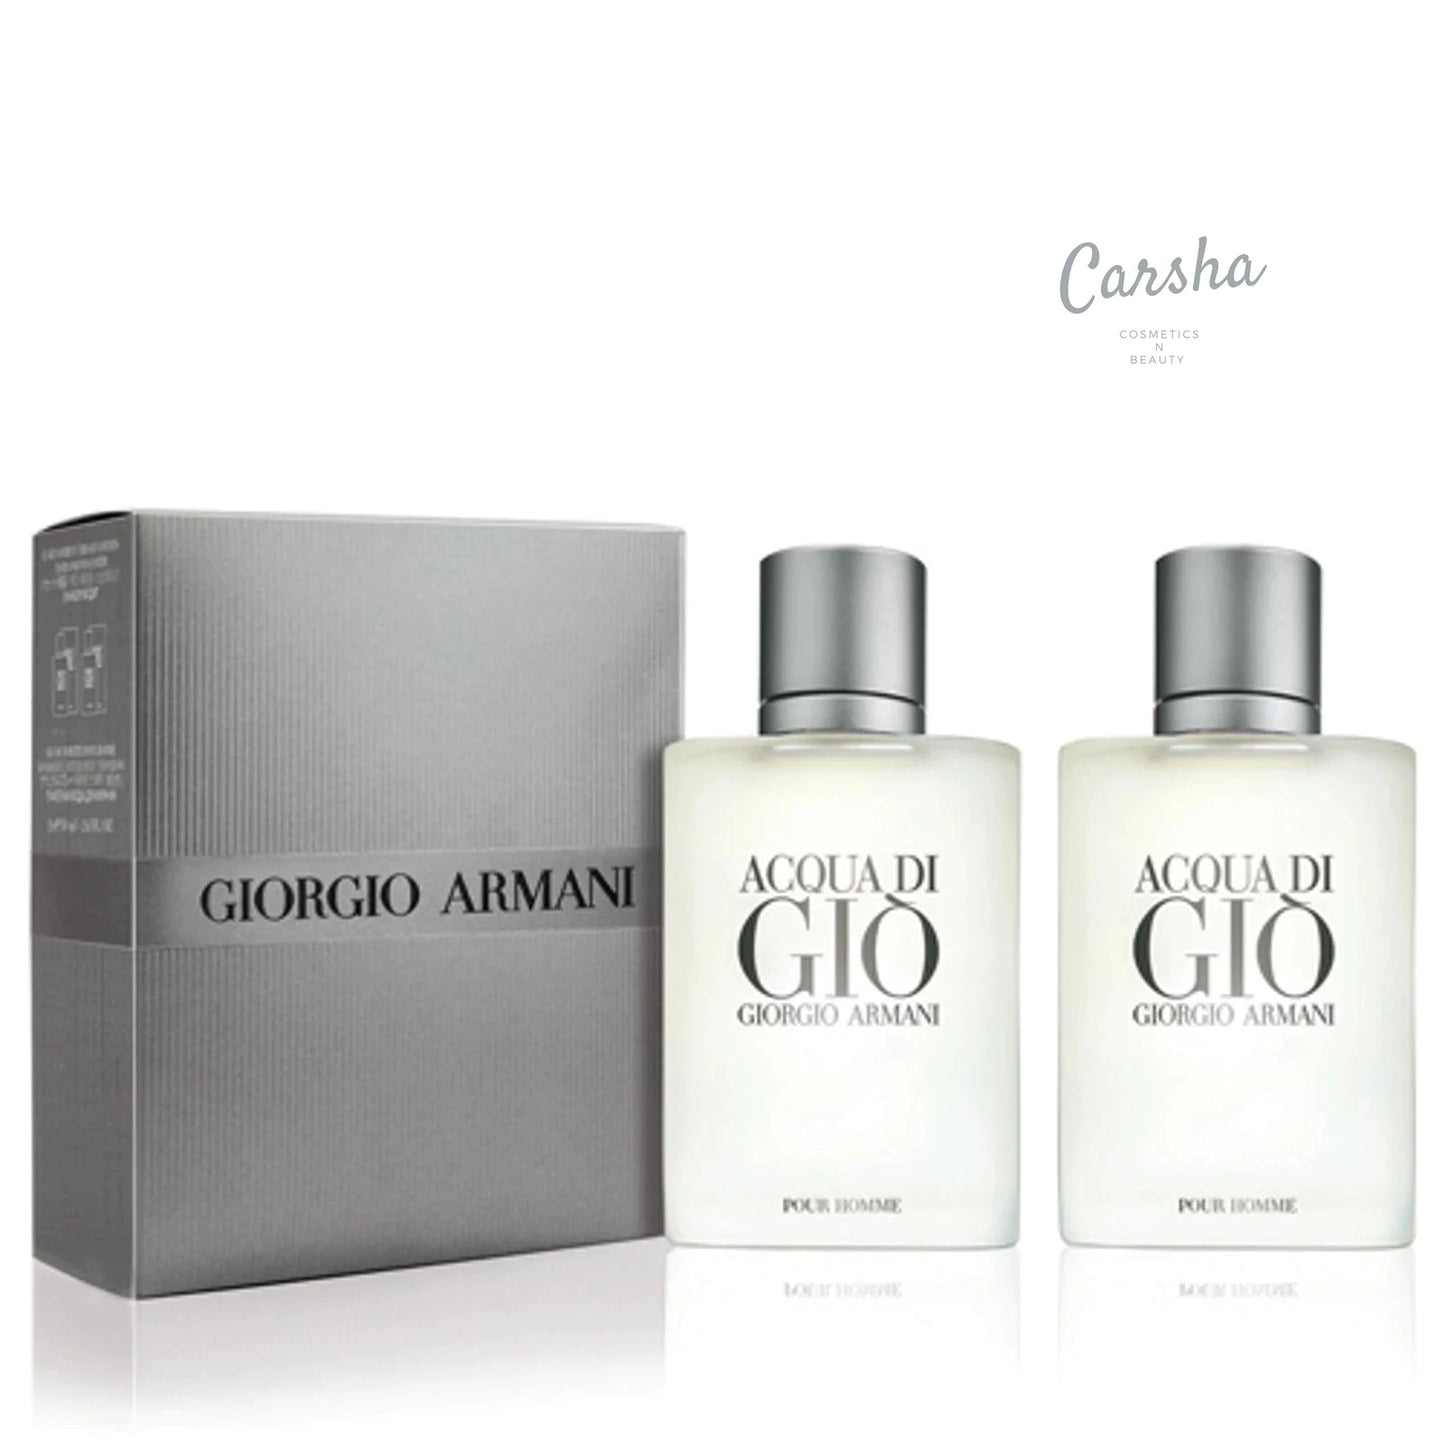 喬治阿瑪尼 Acqua Di Gio 淡香水兩件套裝 30ml*2 | Carsha